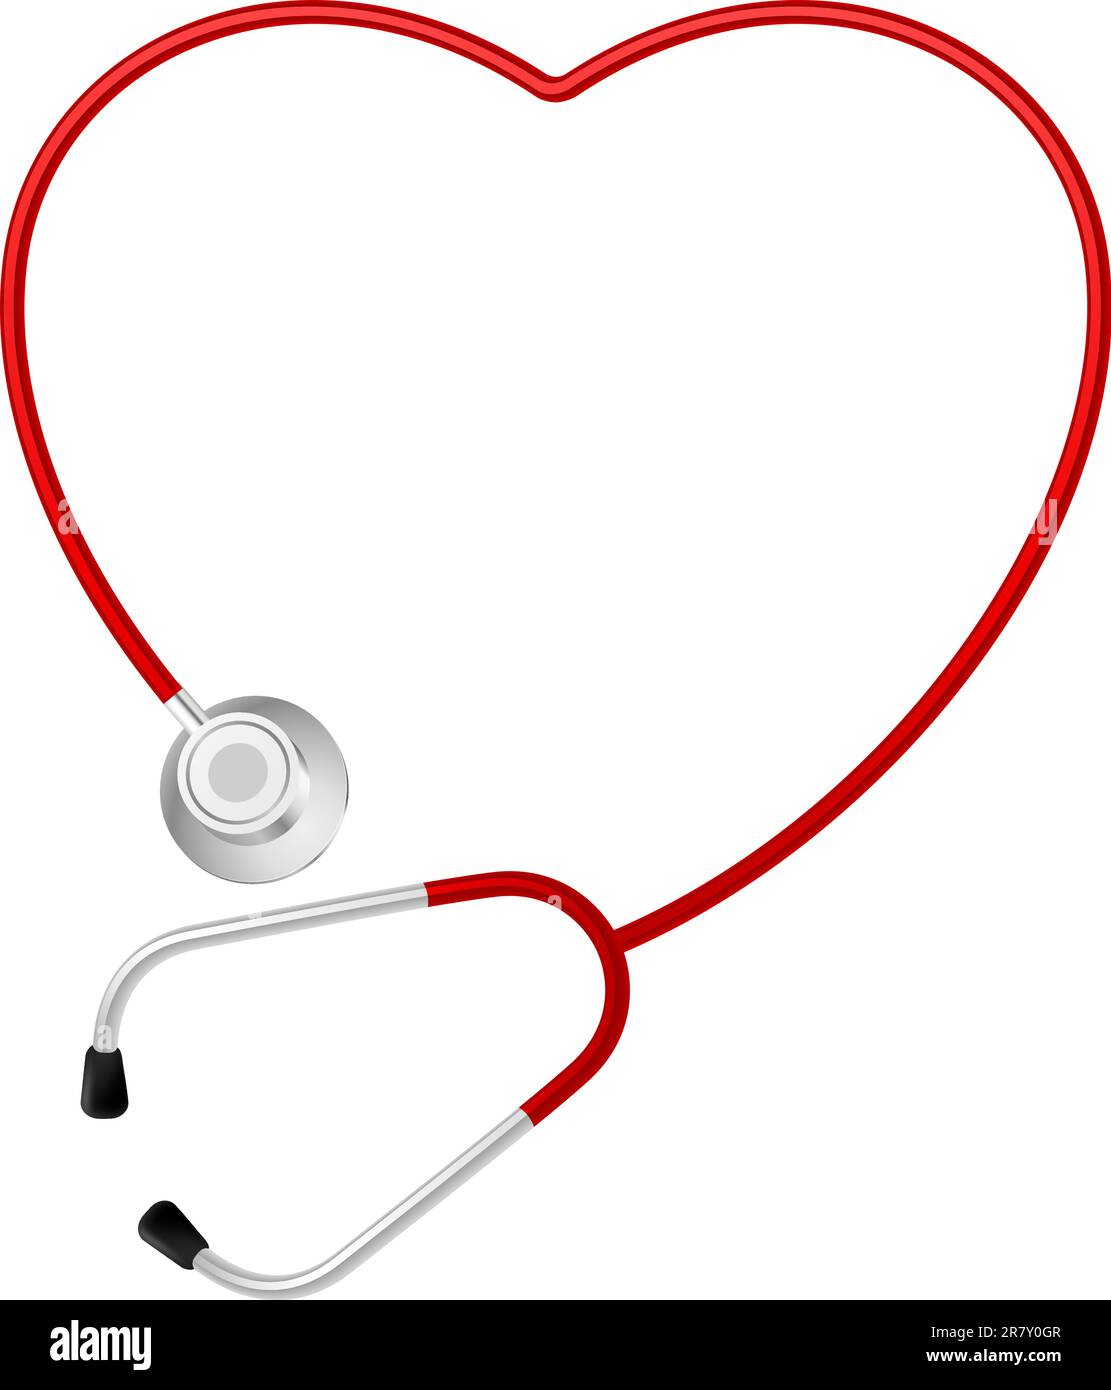 Stetoscopio simbolo del cuore. Immagine su sfondo bianco Illustrazione Vettoriale